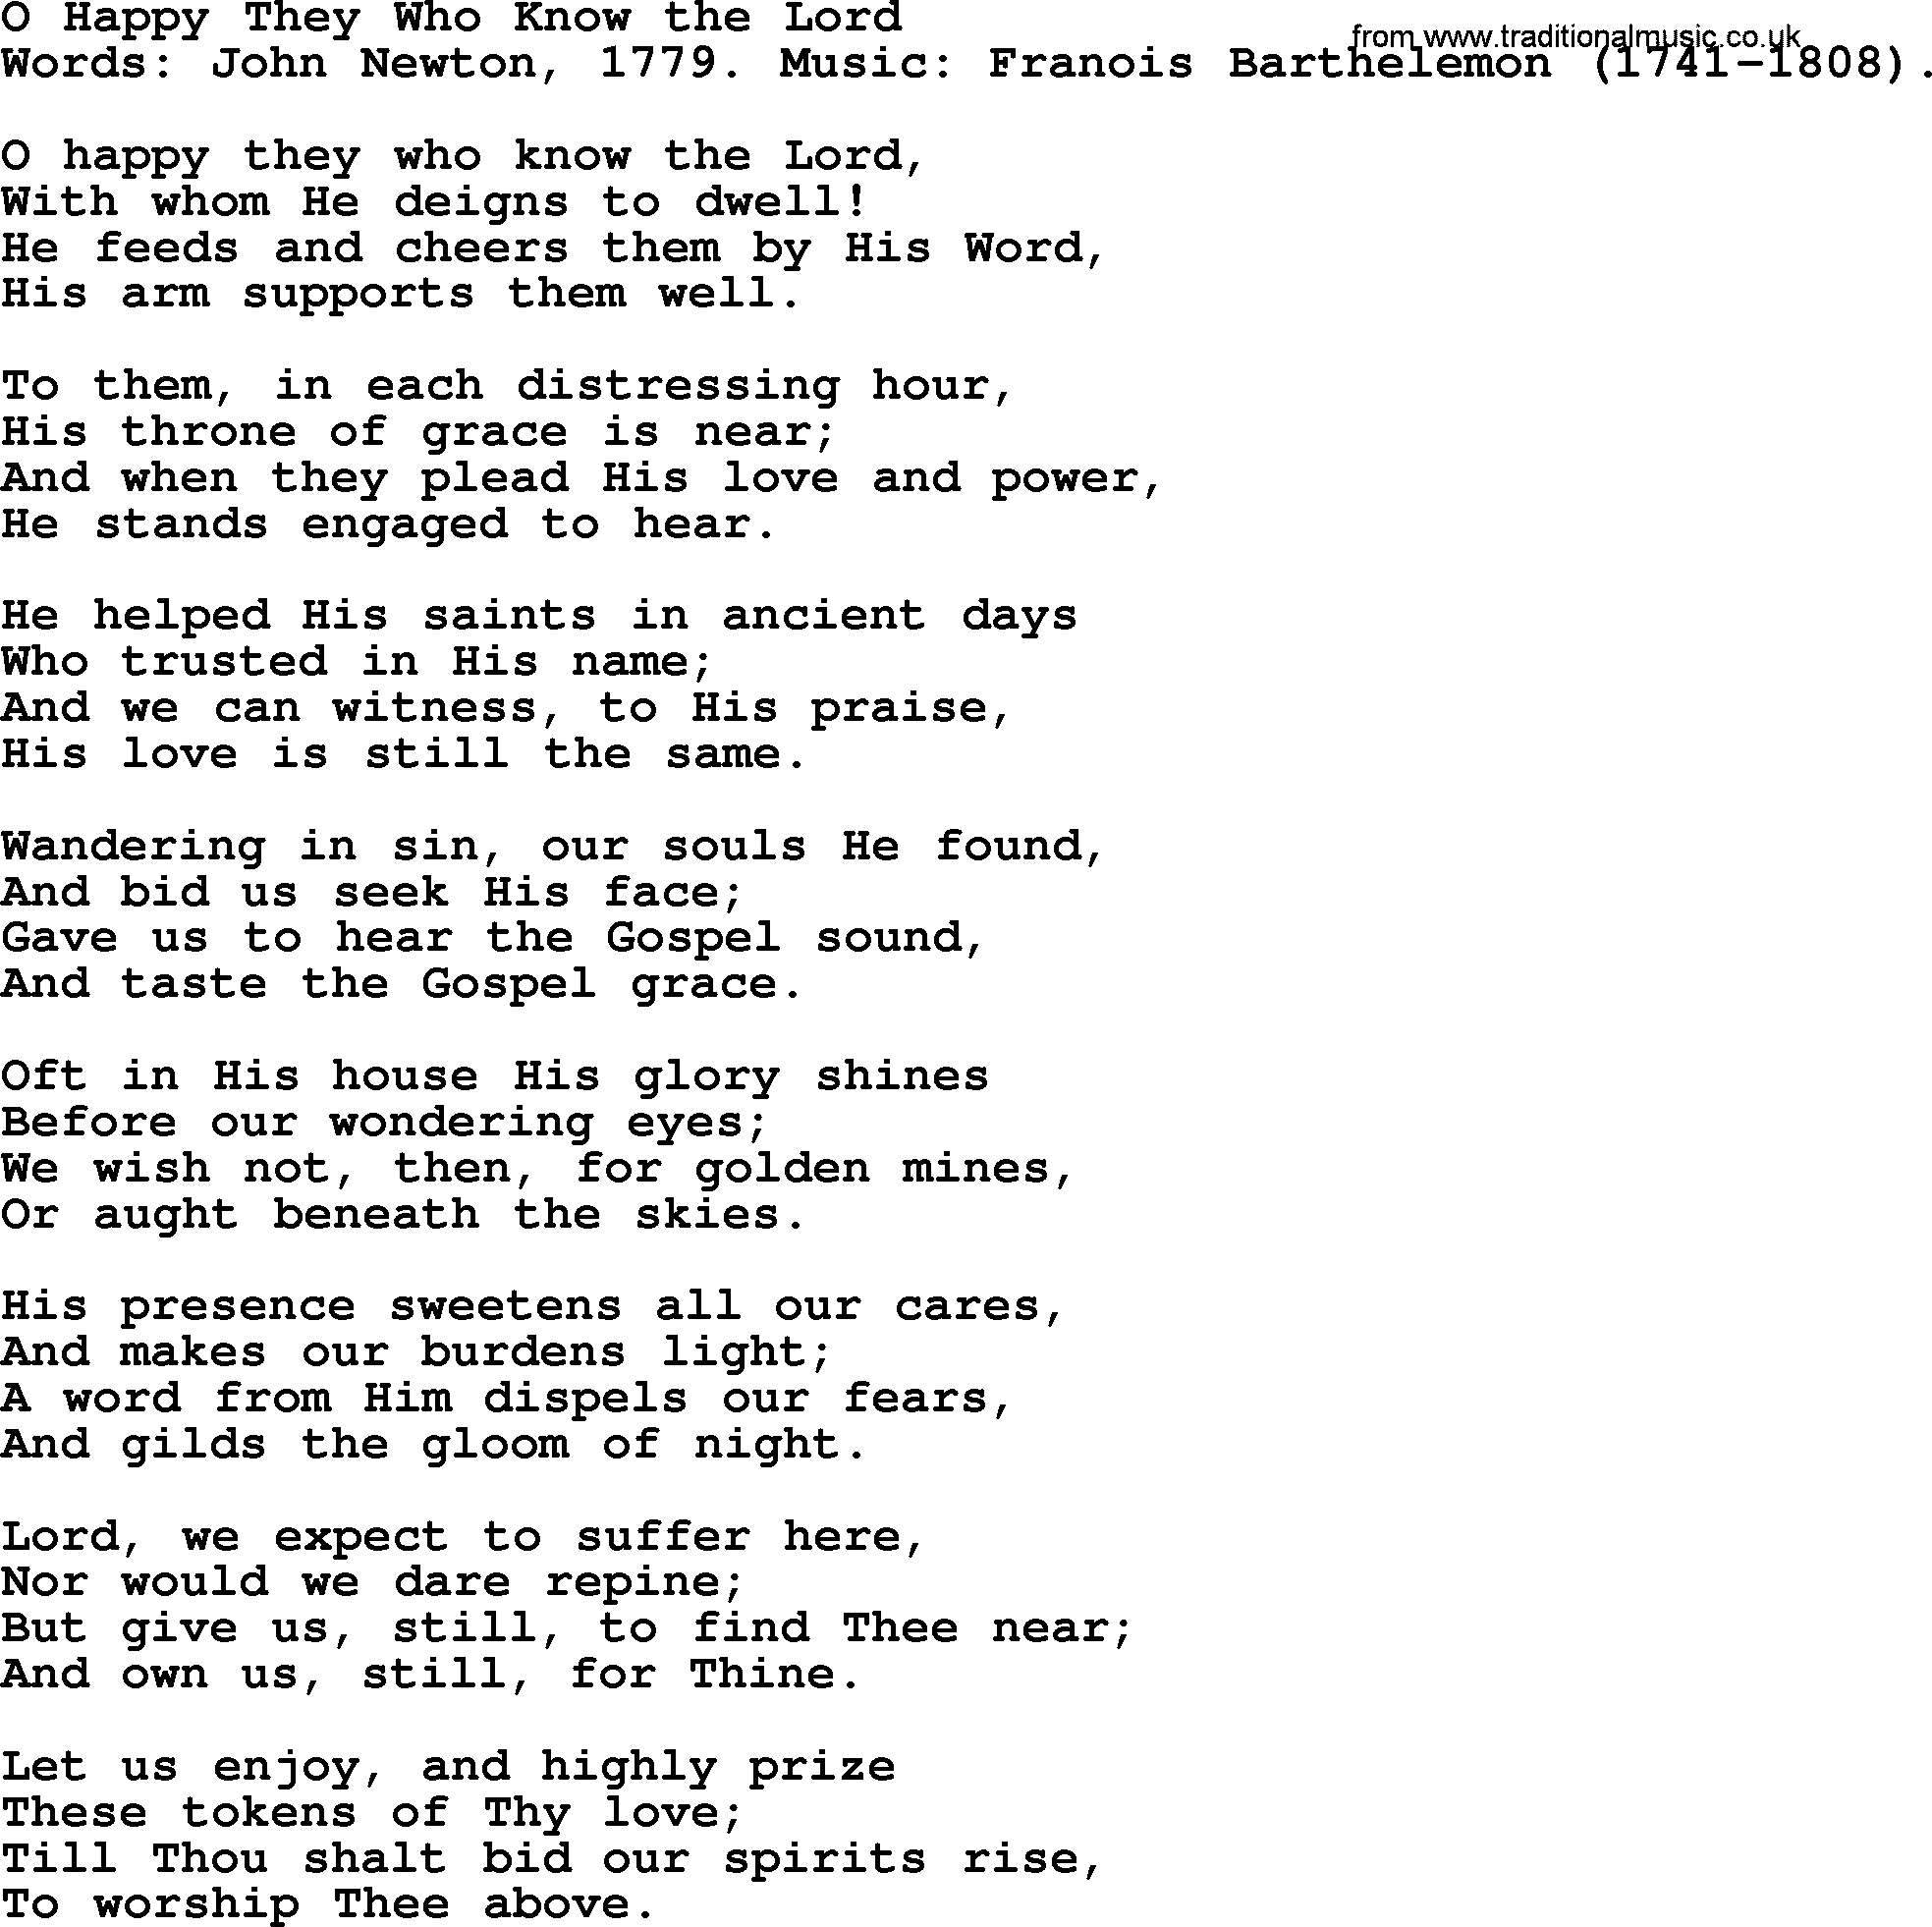 John Newton hymn: O Happy They Who Know The Lord, lyrics